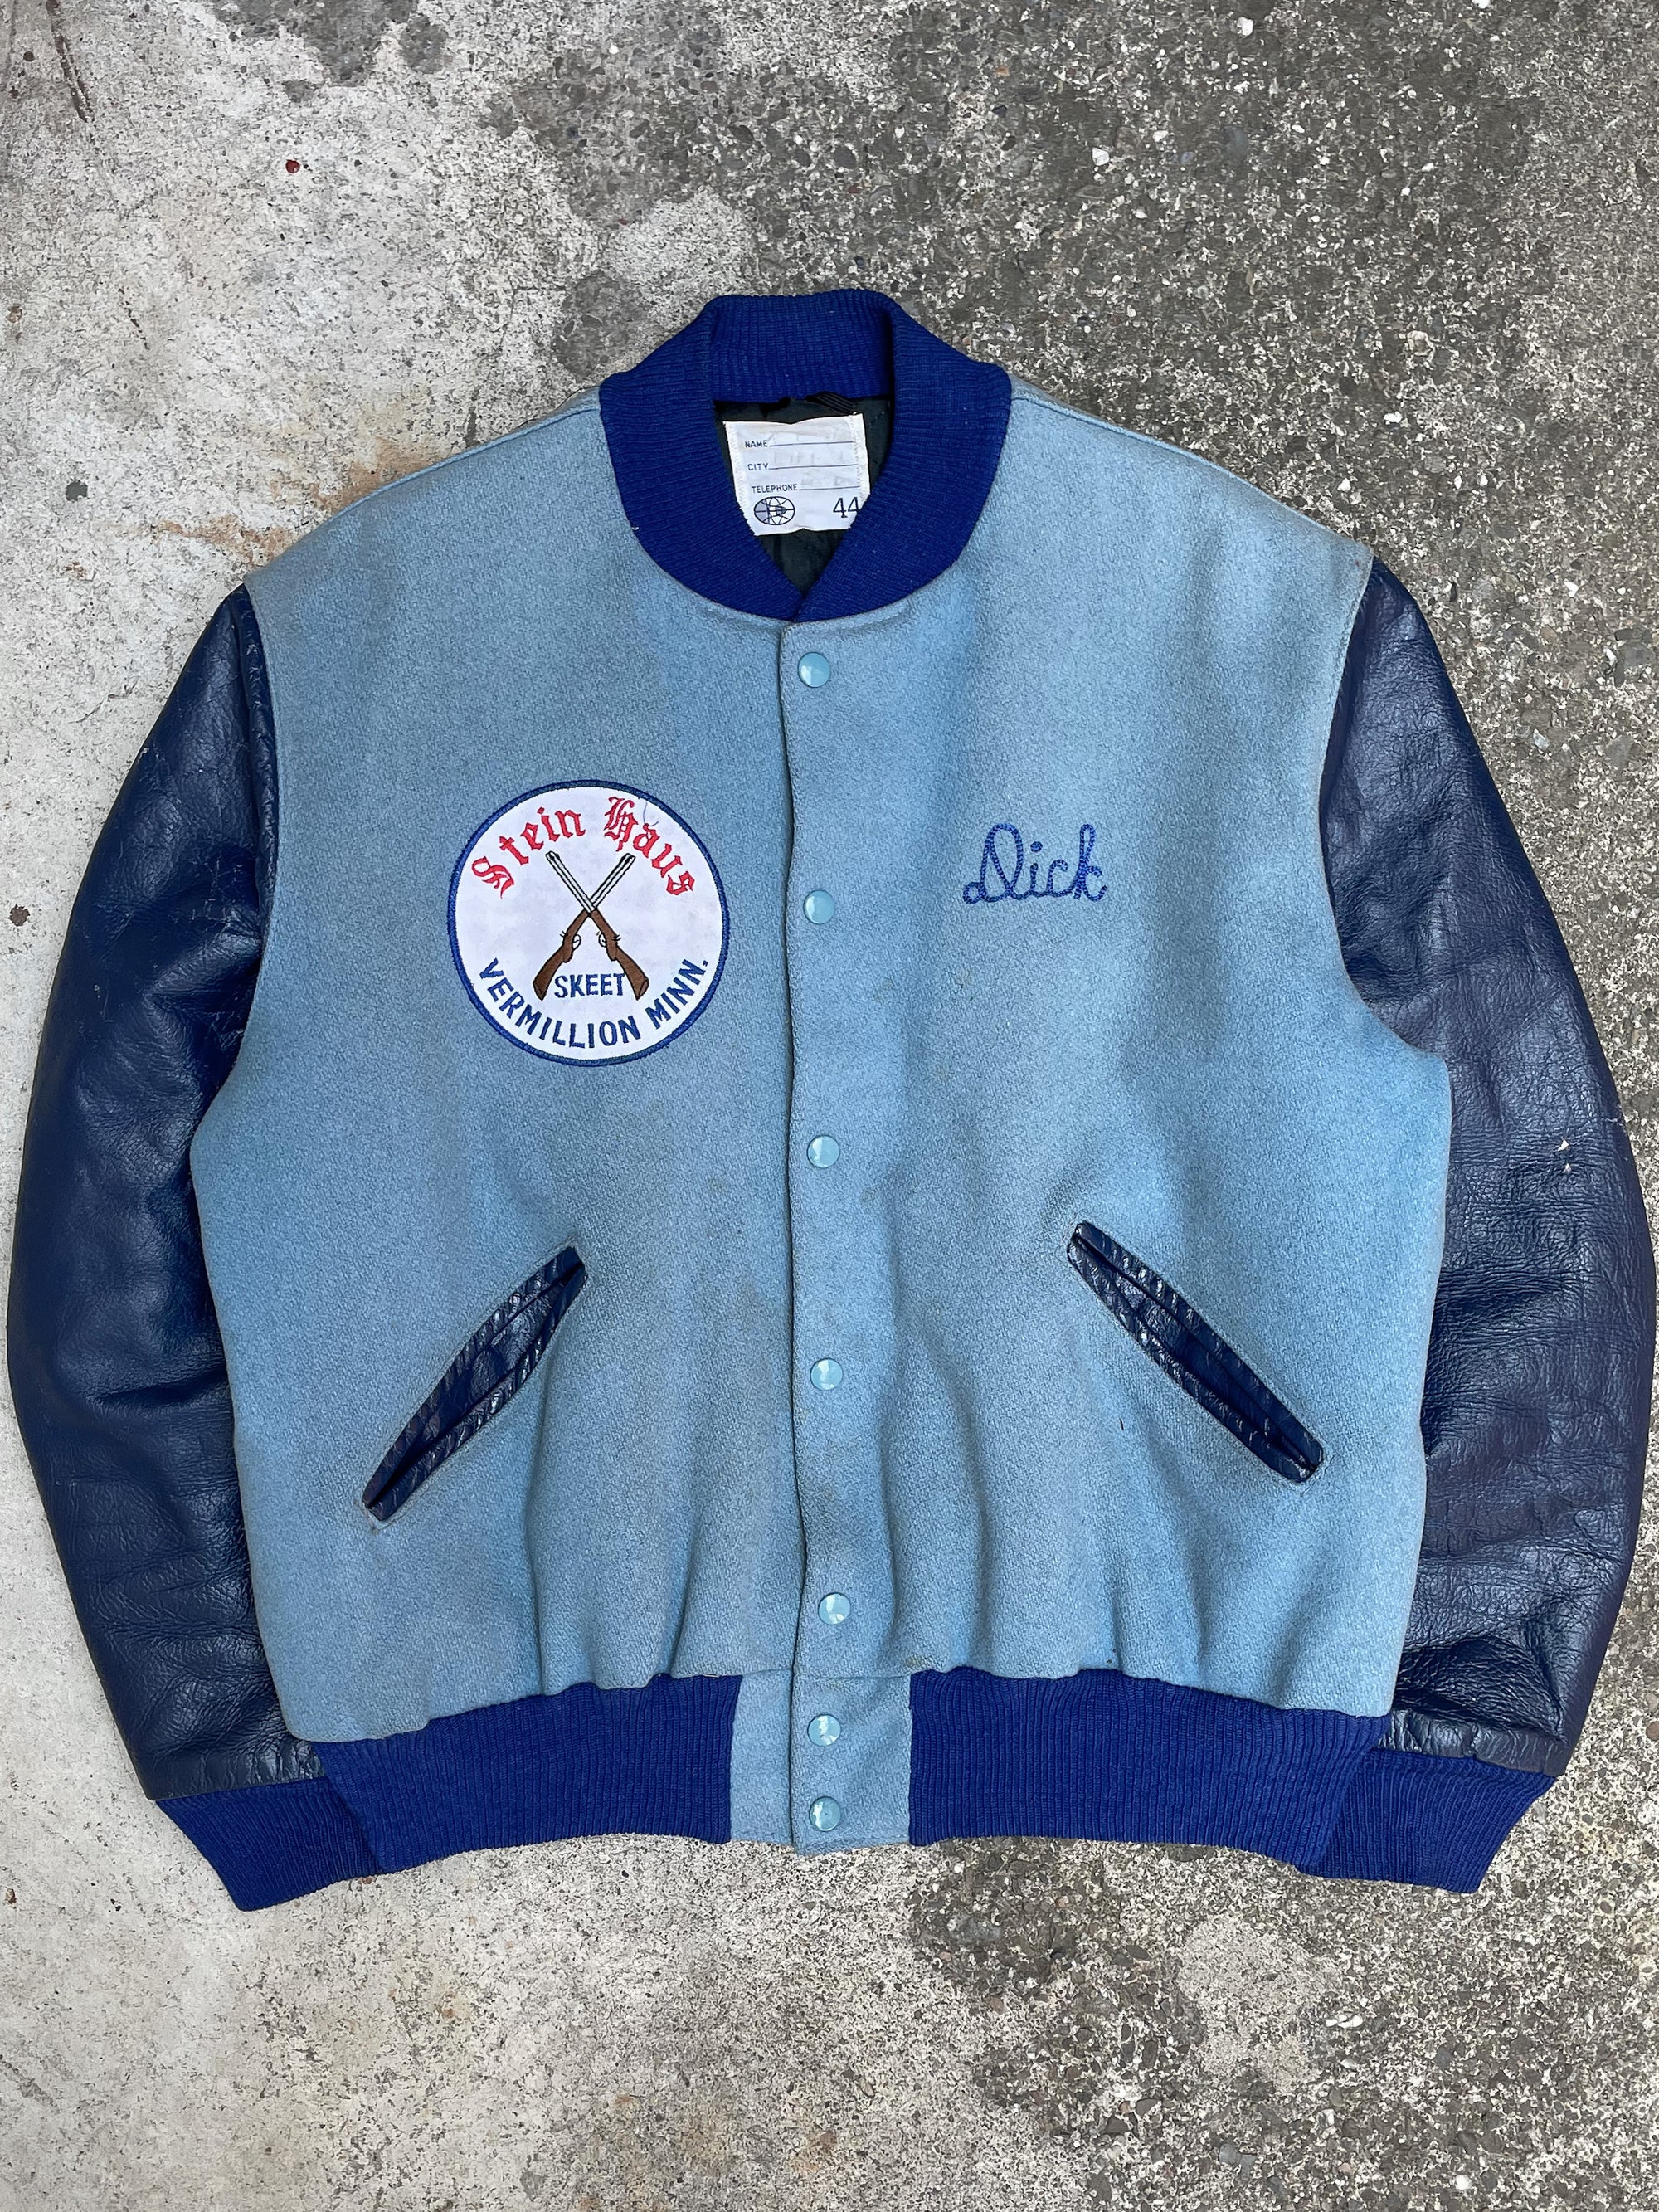 1980s “Stein Haus” Chain Stitched Varsity Jacket (L)